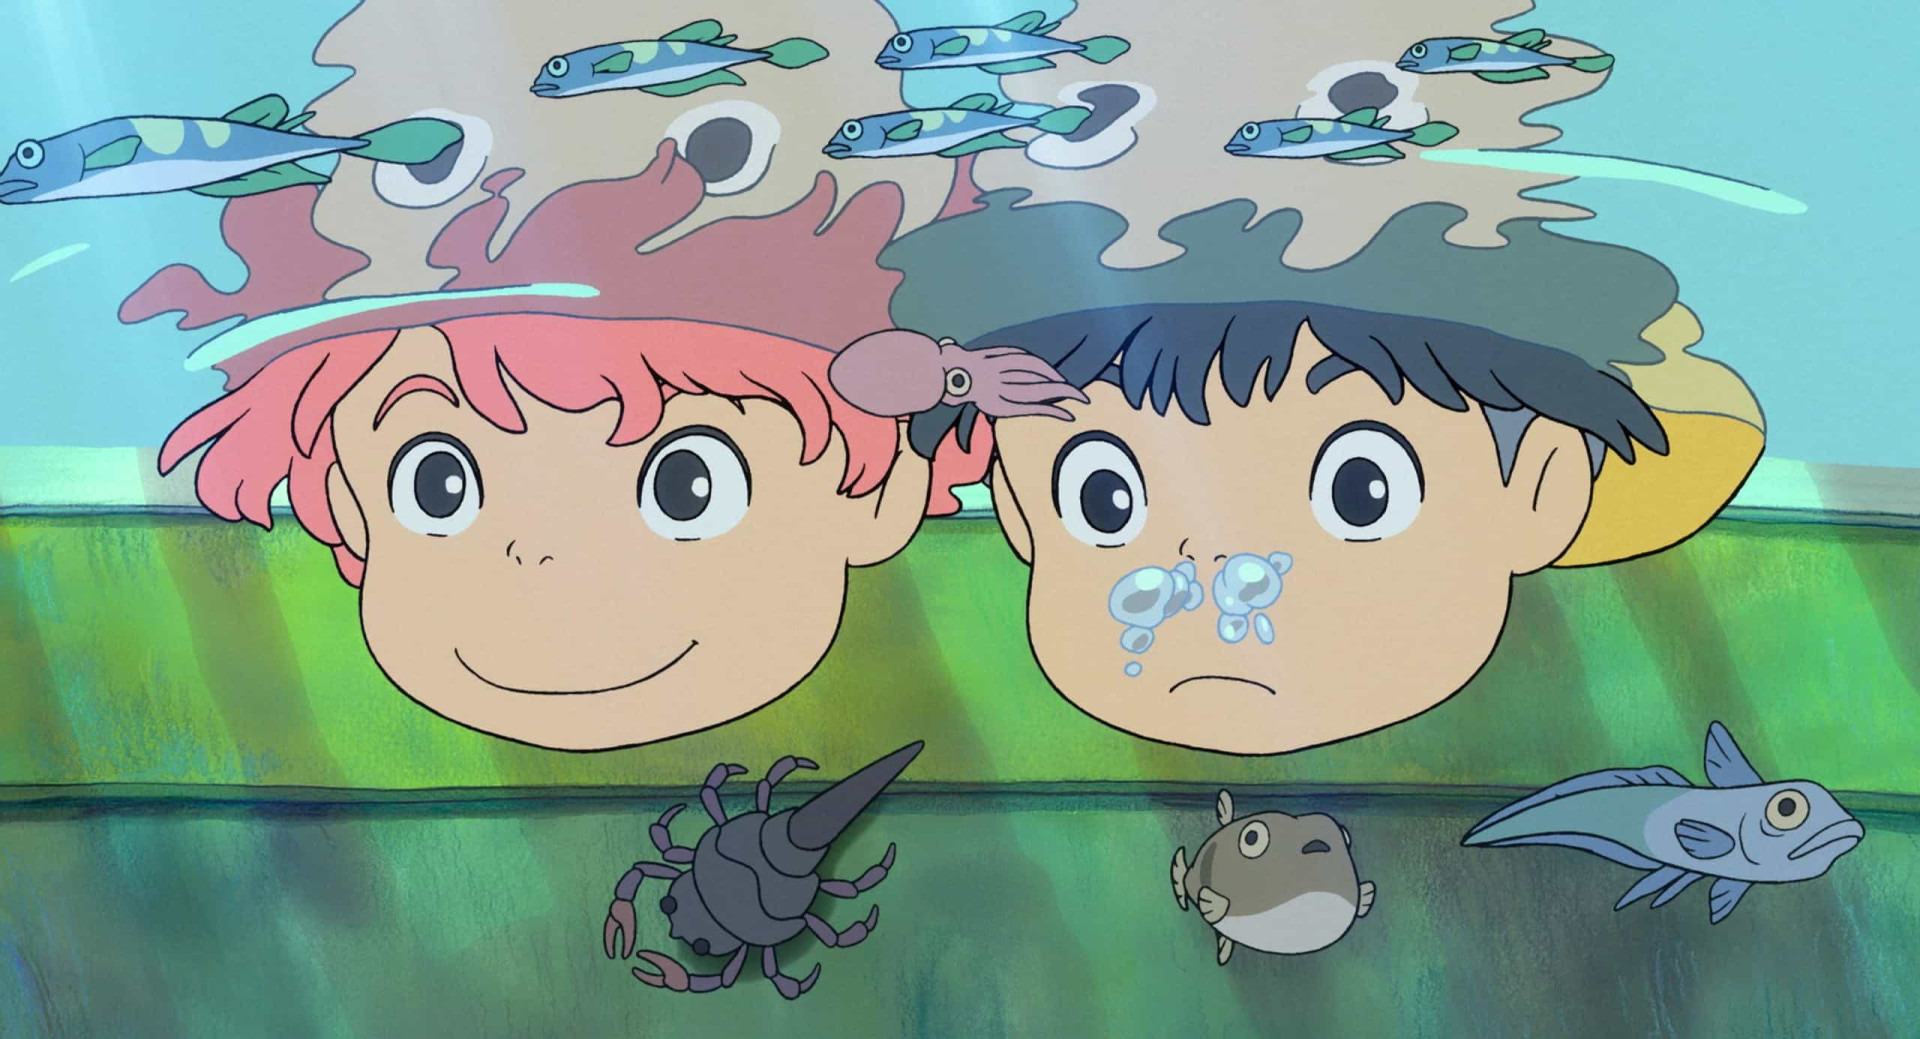 <p>En tant que dixième film, "Ponyo" a marqué une étape importante pour Hayao Miyazaki, et a été l'un des films les plus réussis du Studio Ghibli. L'histoire tourne autour d'une petite fille poisson rouge qui rêve de devenir humaine.</p><p>Tu pourrais aussi aimer:<a href="https://www.starsinsider.com/n/428675?utm_source=msn.com&utm_medium=display&utm_campaign=referral_description&utm_content=518527v2"> Les meilleures recettes à base de crevettes</a></p>